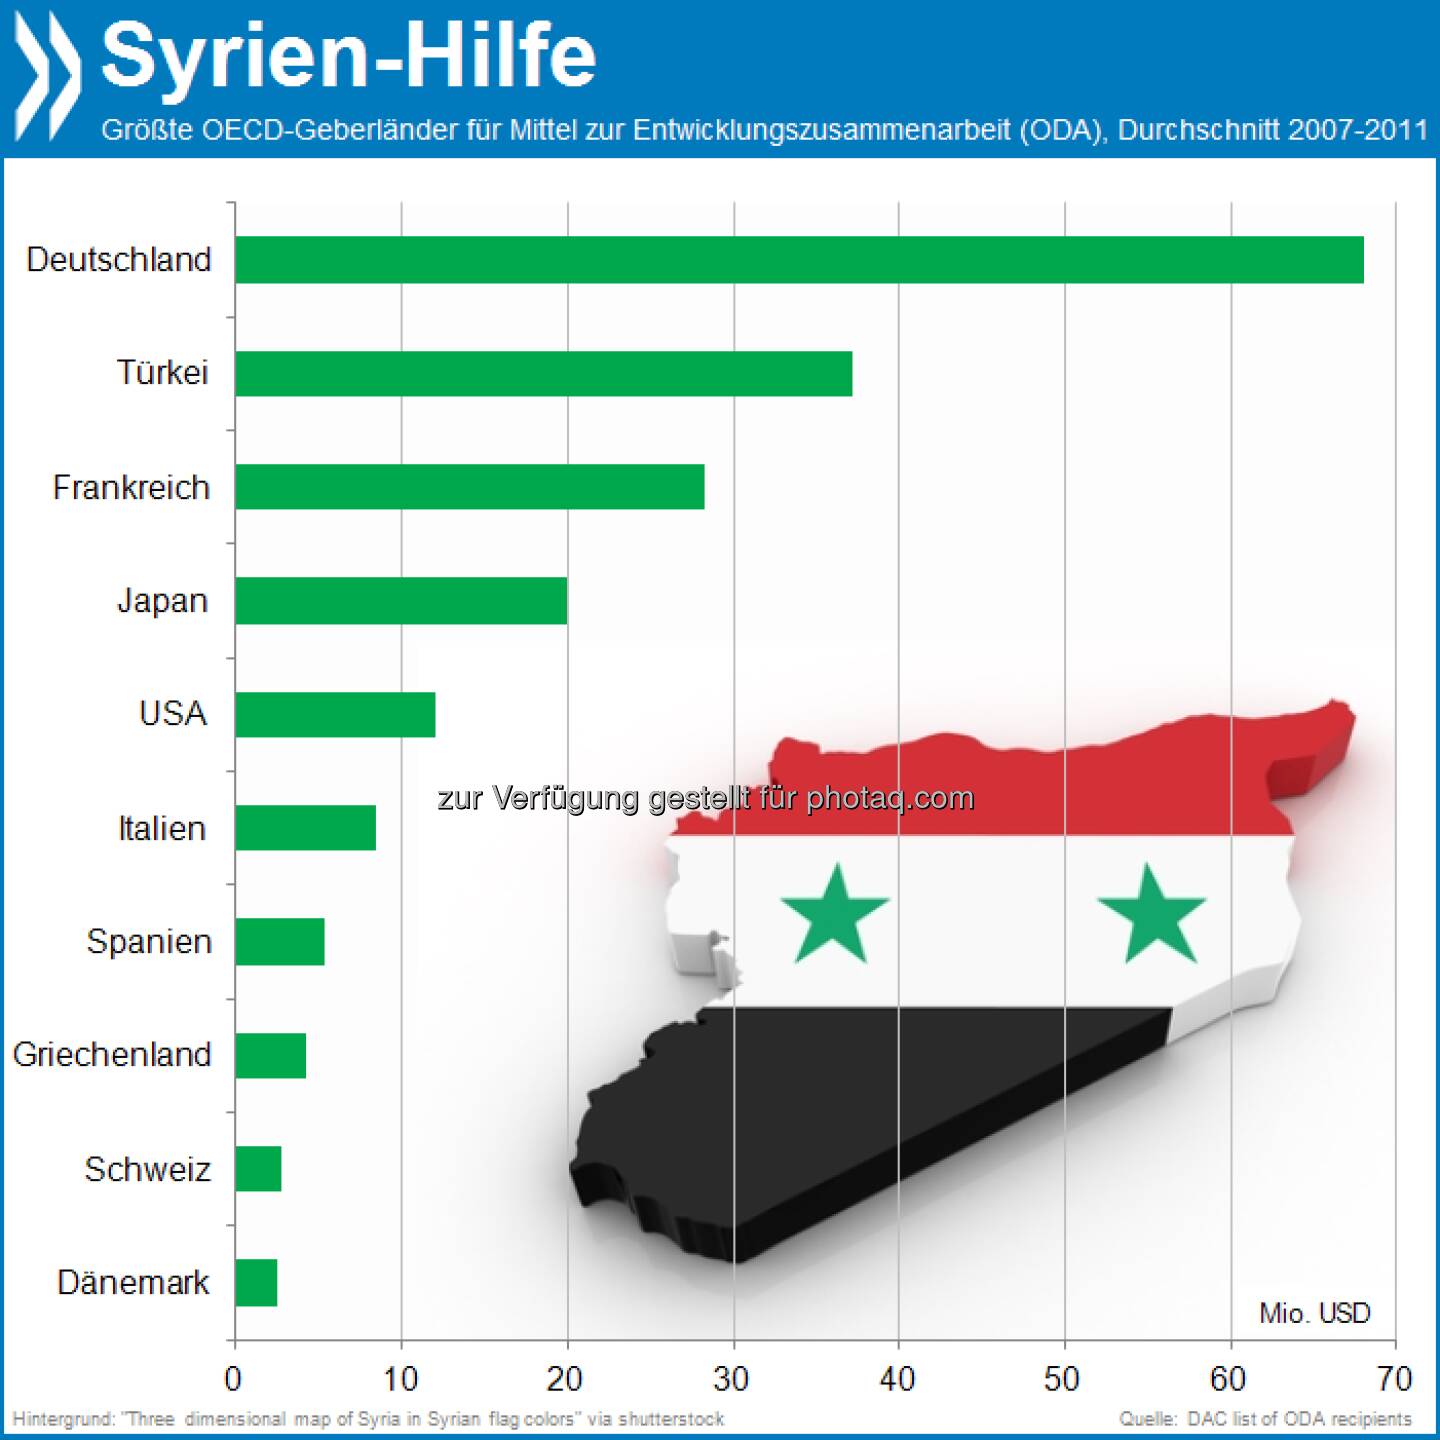 Brennpunkt Nr 1: Syrien erhielt im Schnitt der vergangenen Jahre von keinem OECD-Land so viele Mittel zur Entwicklungszusammenarbeit (ODA) wie von Deutschland. 

Mehr unter http://www.oecd-berlin.de/charts/aid-statistics/index.php?cr=syr&lg=en (OECD Interactive Charts - Aid Statistics)